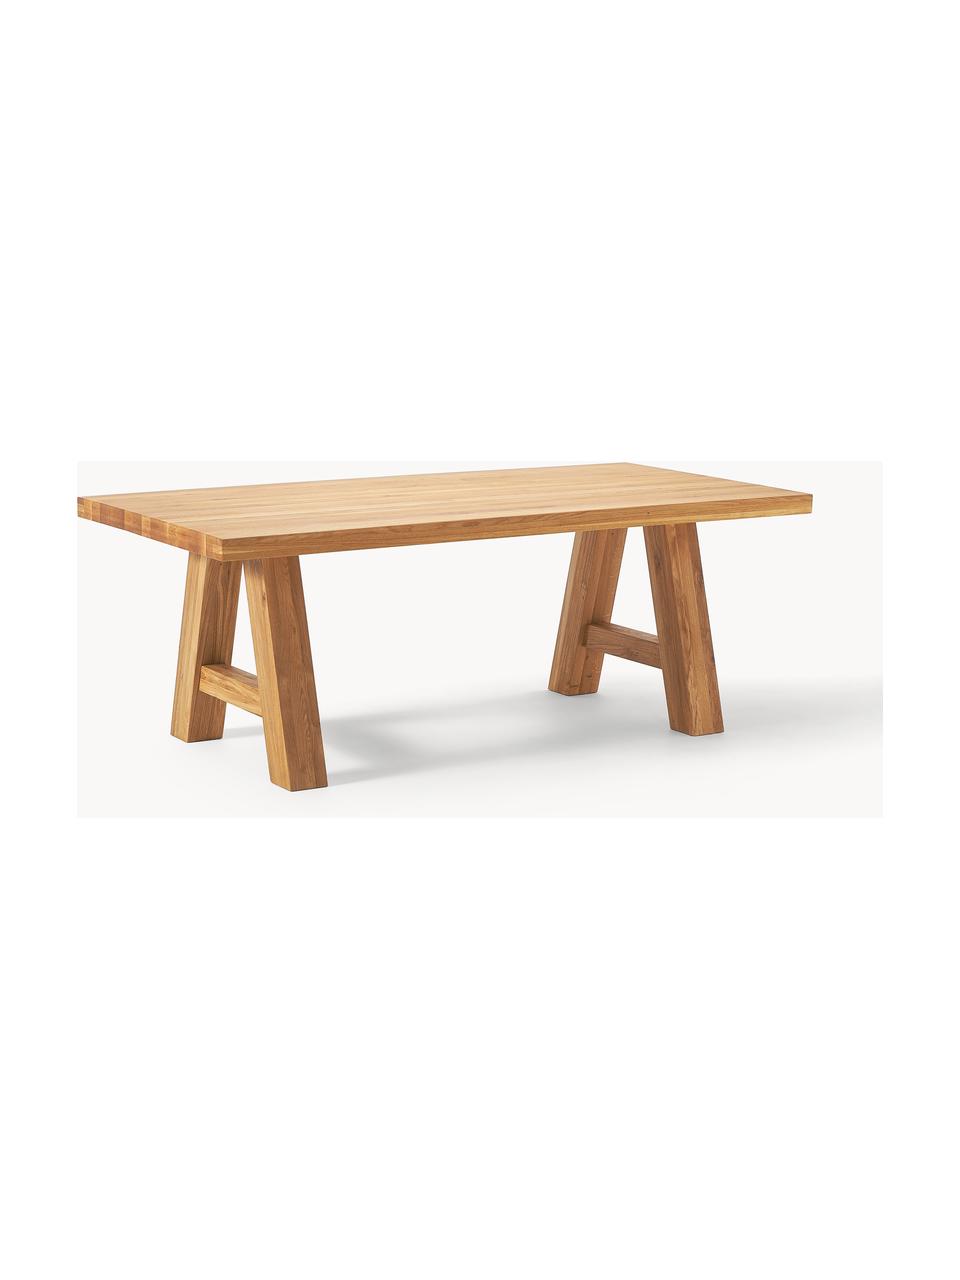 Jedálenský stôl z dubového dreva Ashton, rôzne veľkosti, Masívne dubové drevo, naolejované 
100 % drevo z udržateľného lesného hospodárstva
Tento produkt je vyrobený z trvalo udržateľného dreva s certifikátom FSC®., Dubové drevo, ošetrené olejom, Š 200 x H 100 cm